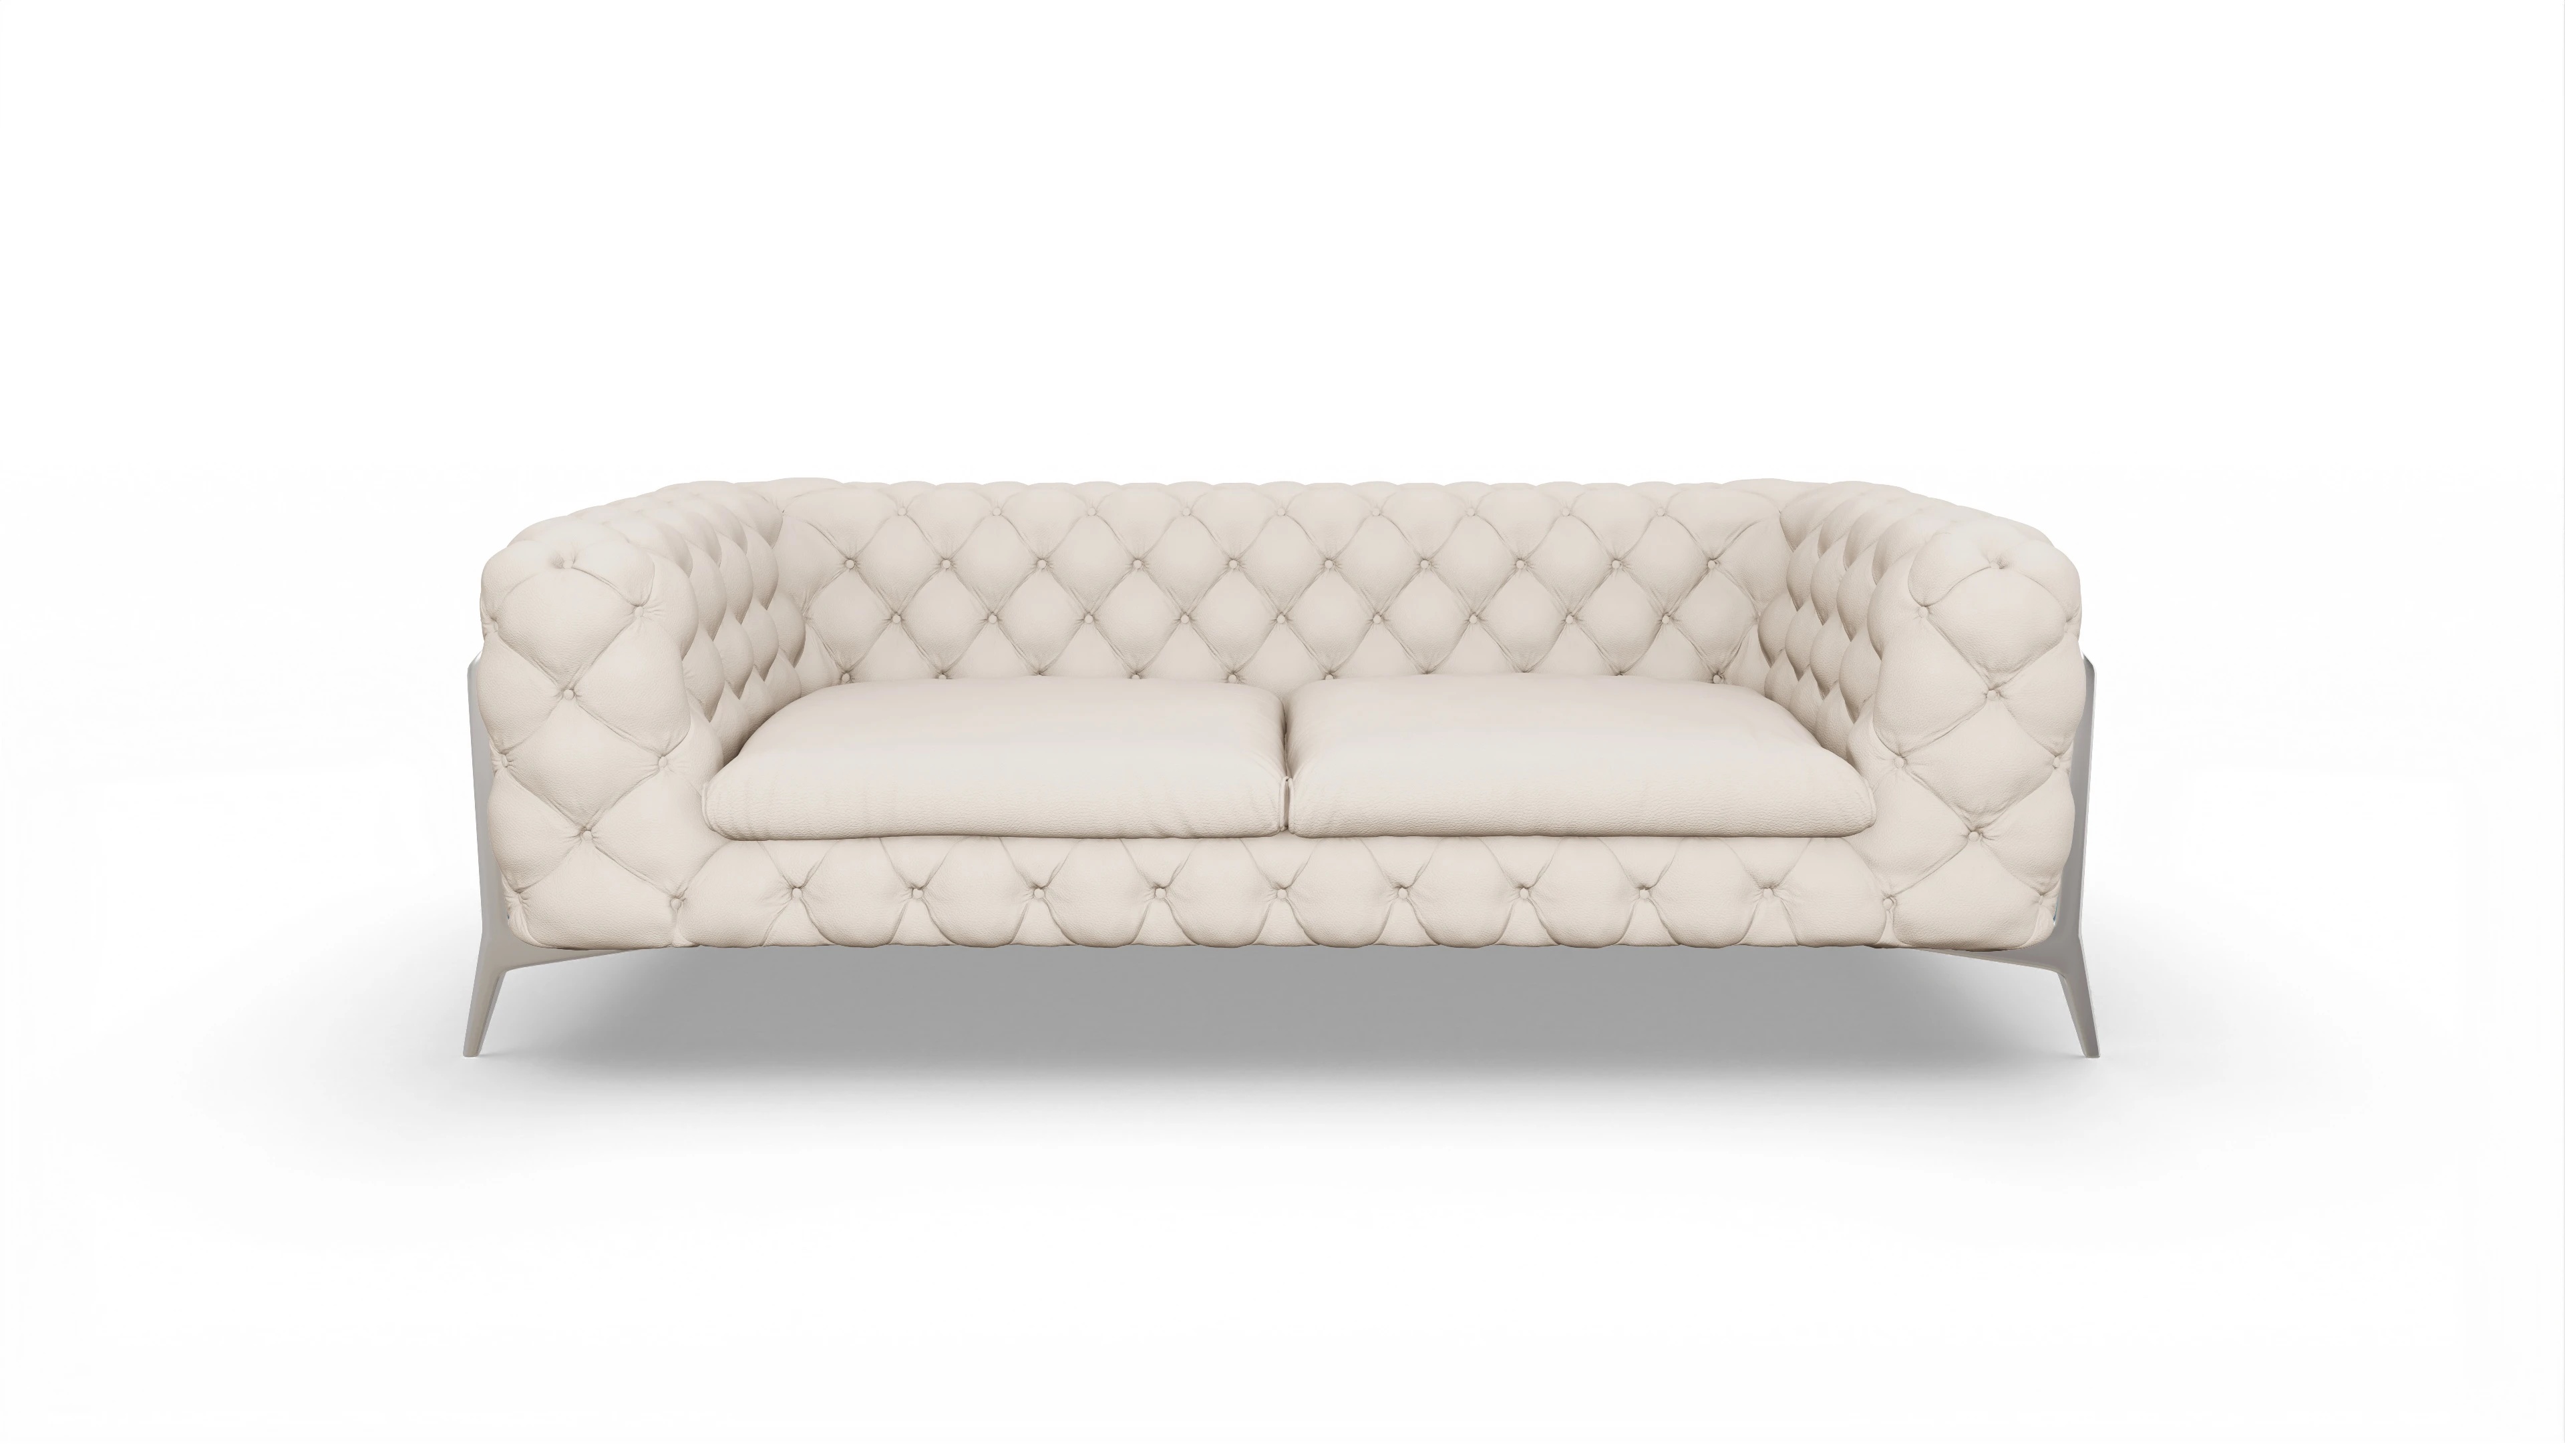 Modern Chesterfield Sofa Juno | VON WILMOWSKY